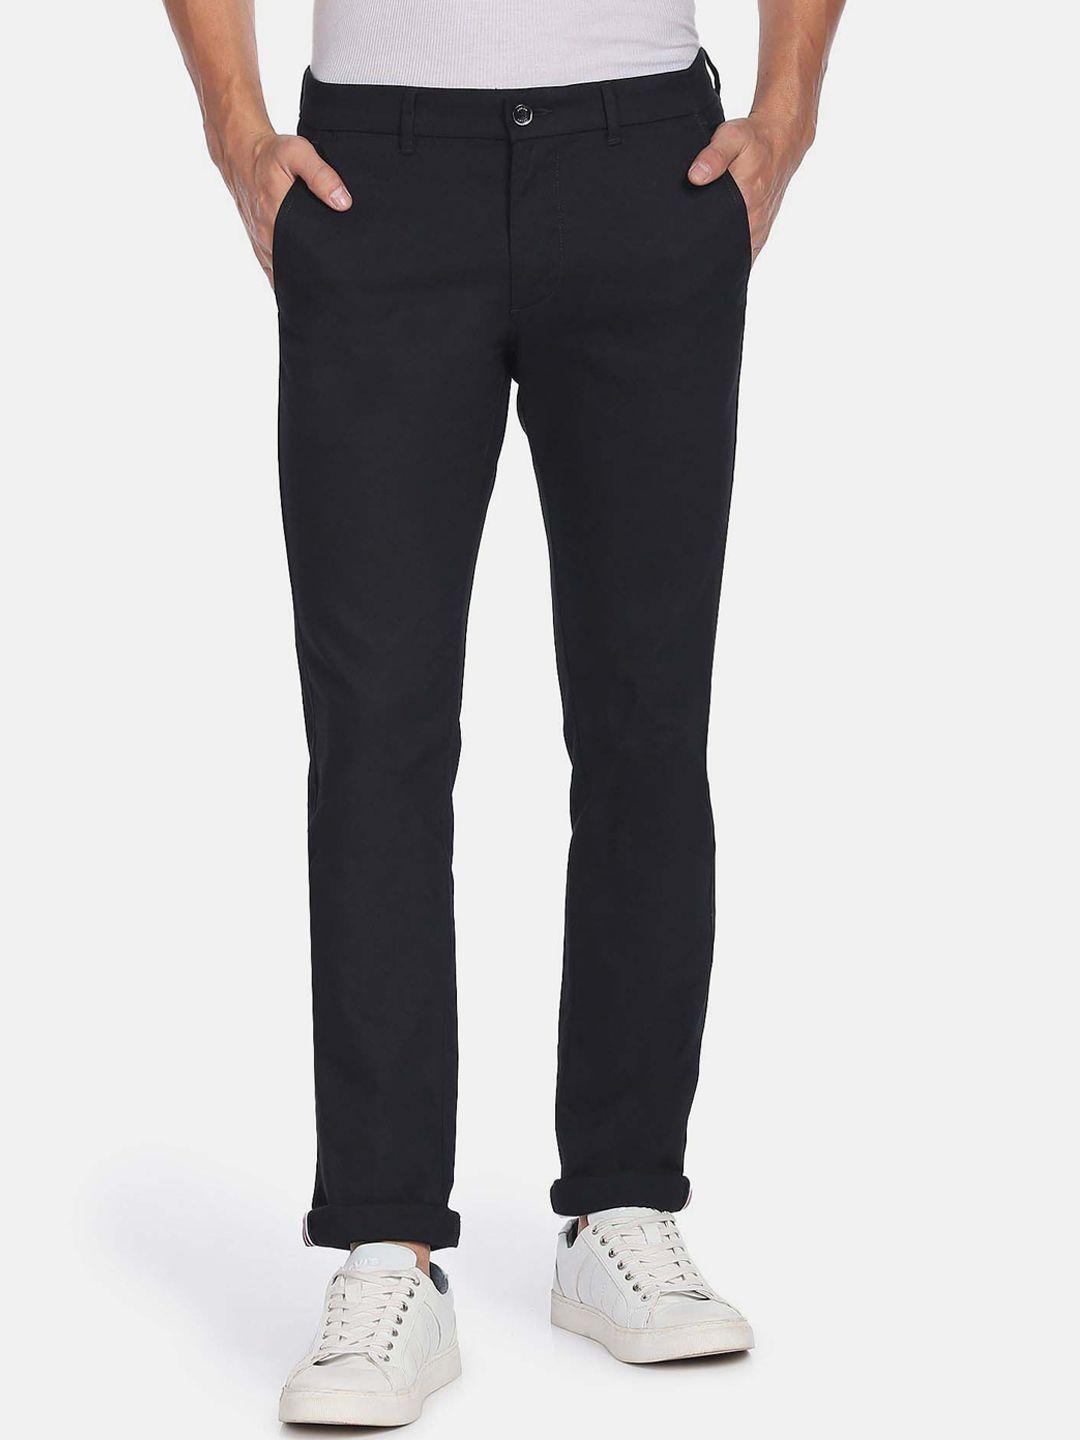 arrow-sport-men-cotton-slim-fit-low-rise-trousers